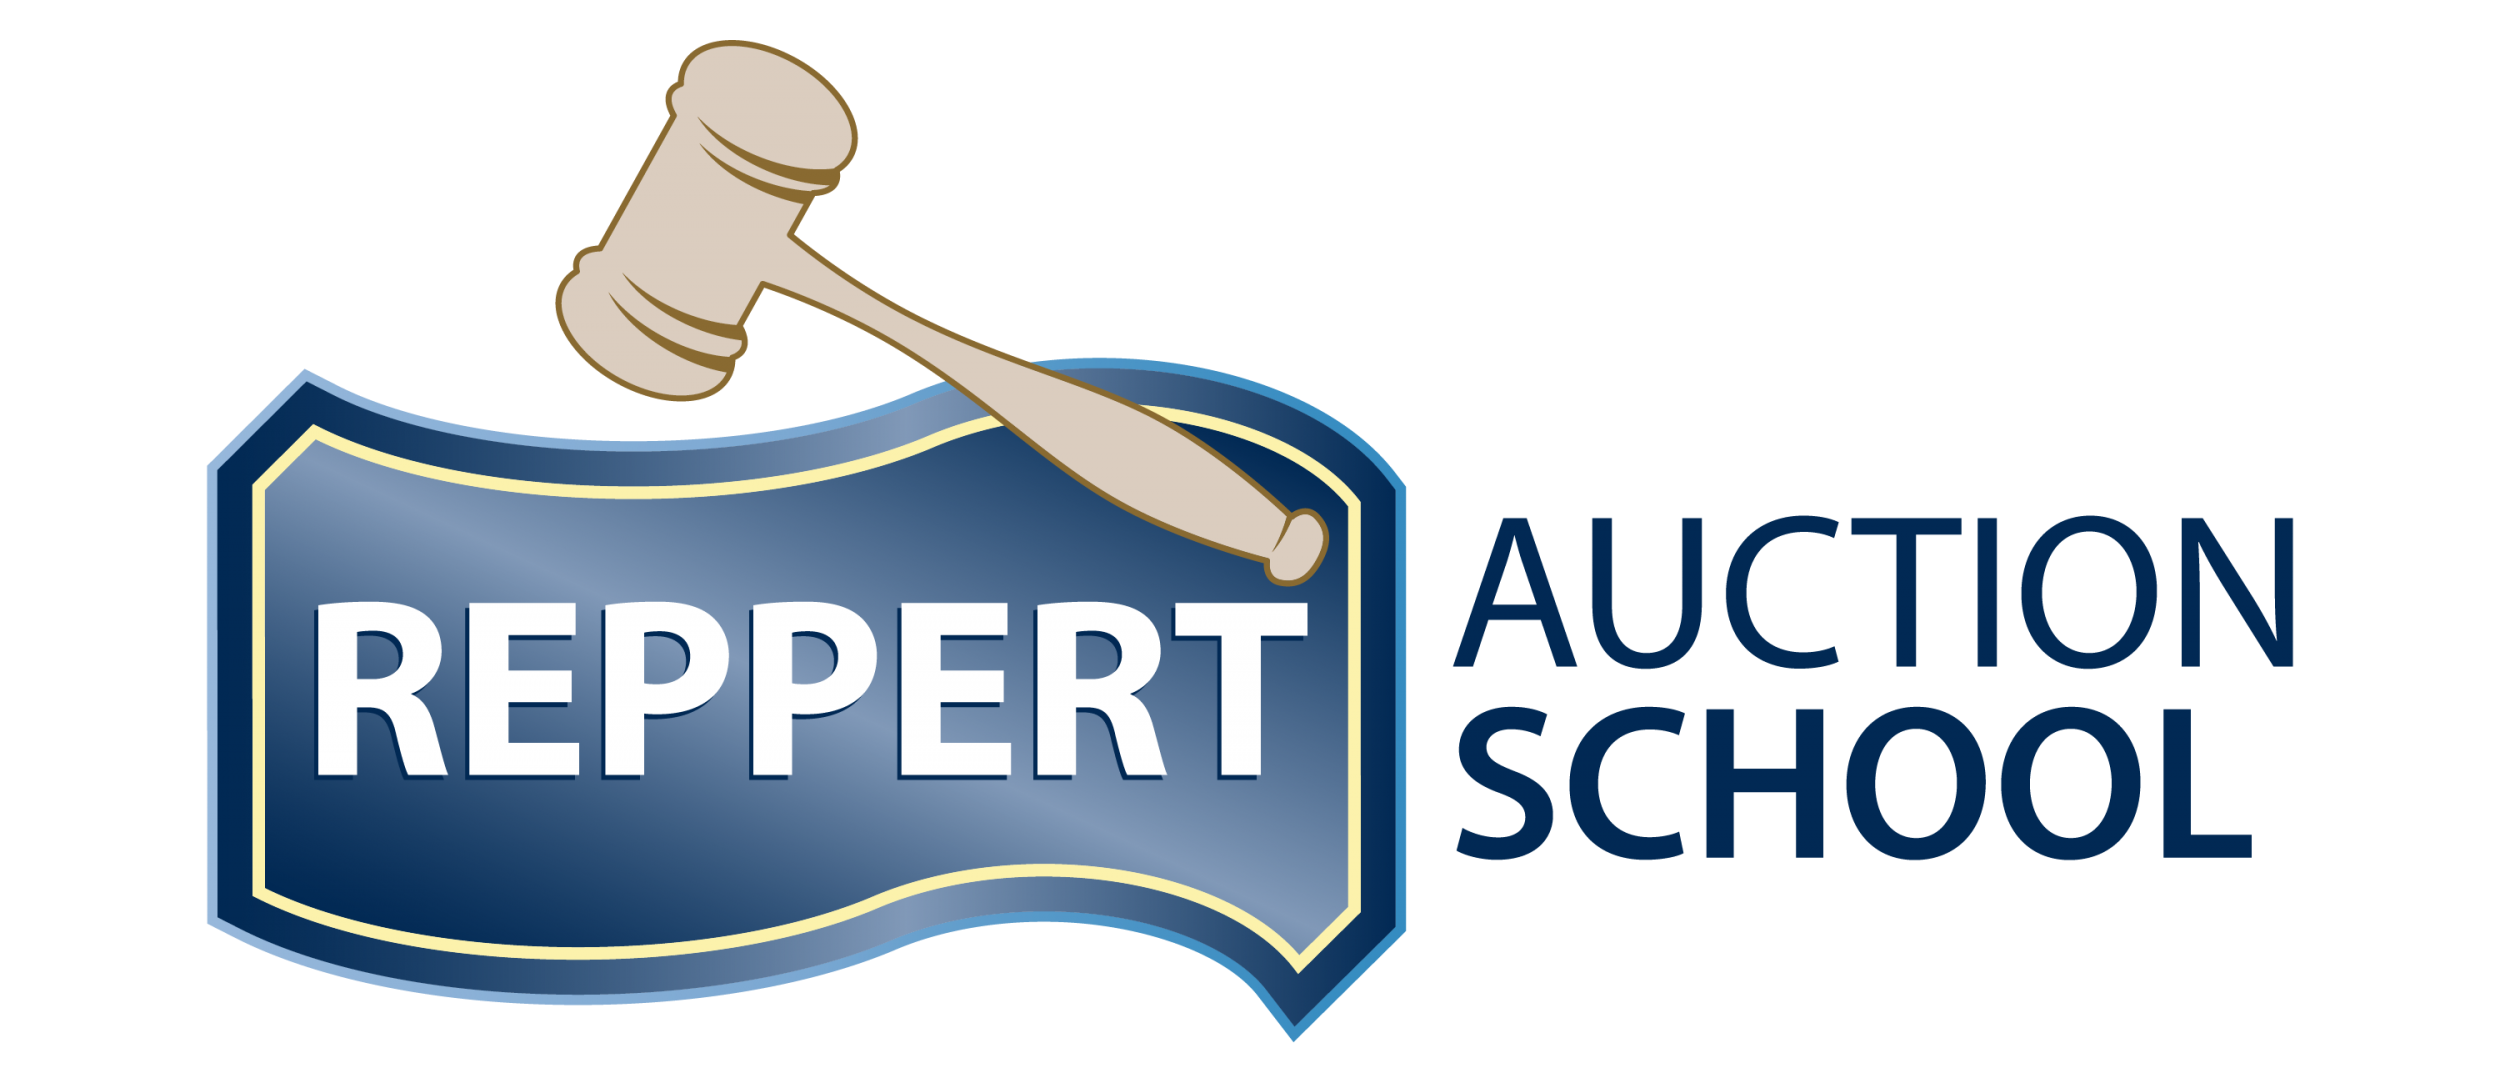 Reppert Auction School